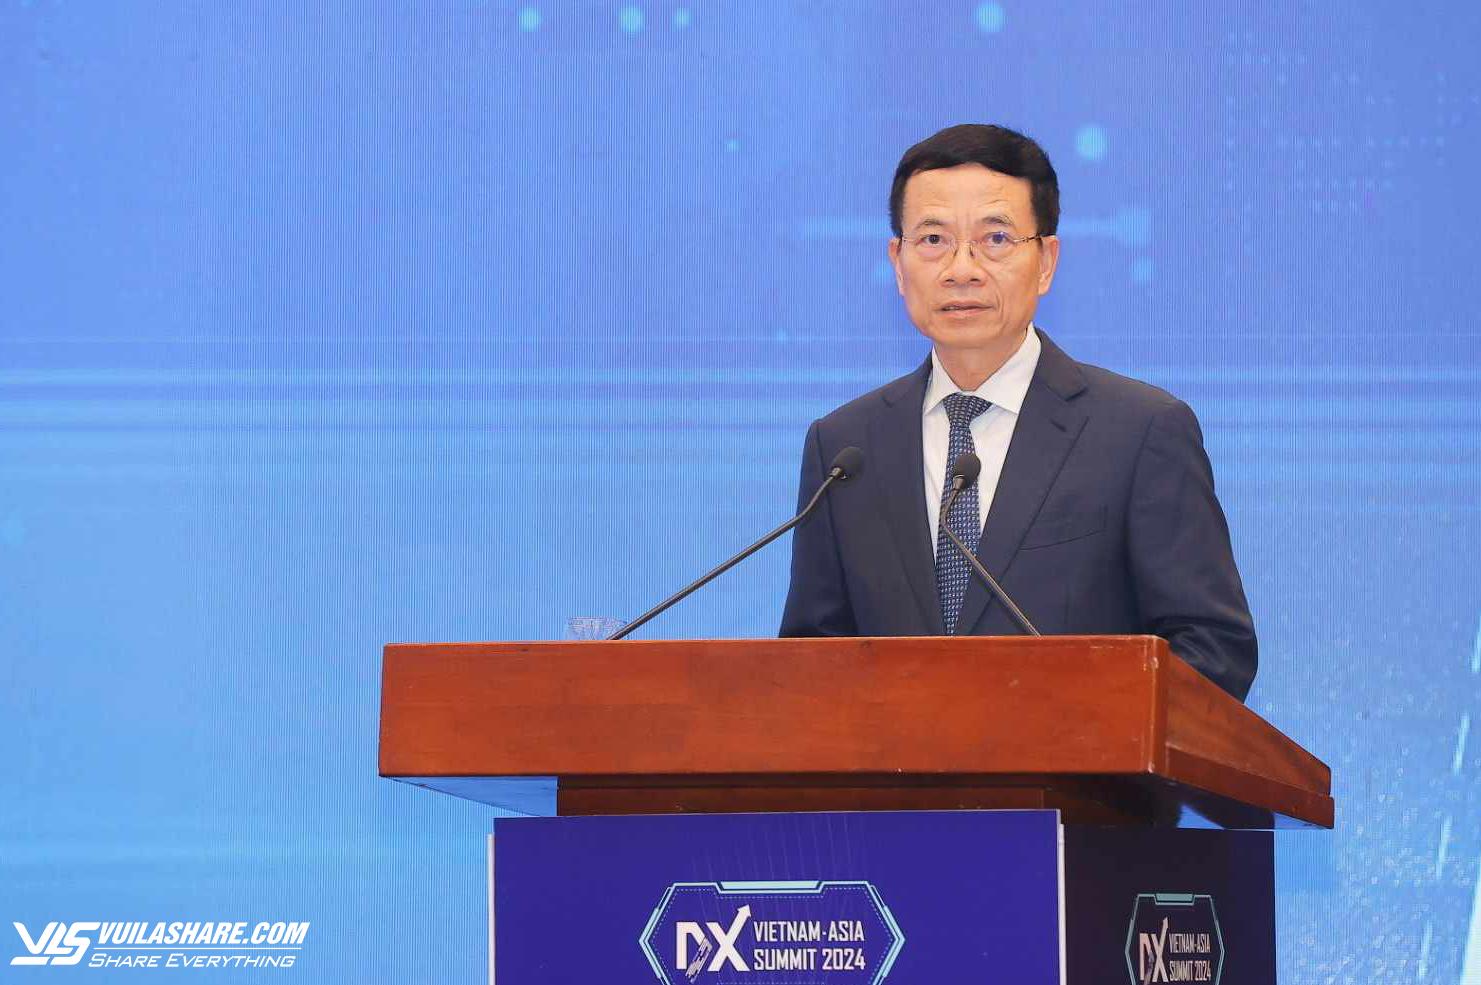 Bộ trưởng Nguyễn Mạnh Hùng cho rằng chuyển đổi số đang tạo ra nguồn tài nguyên mới